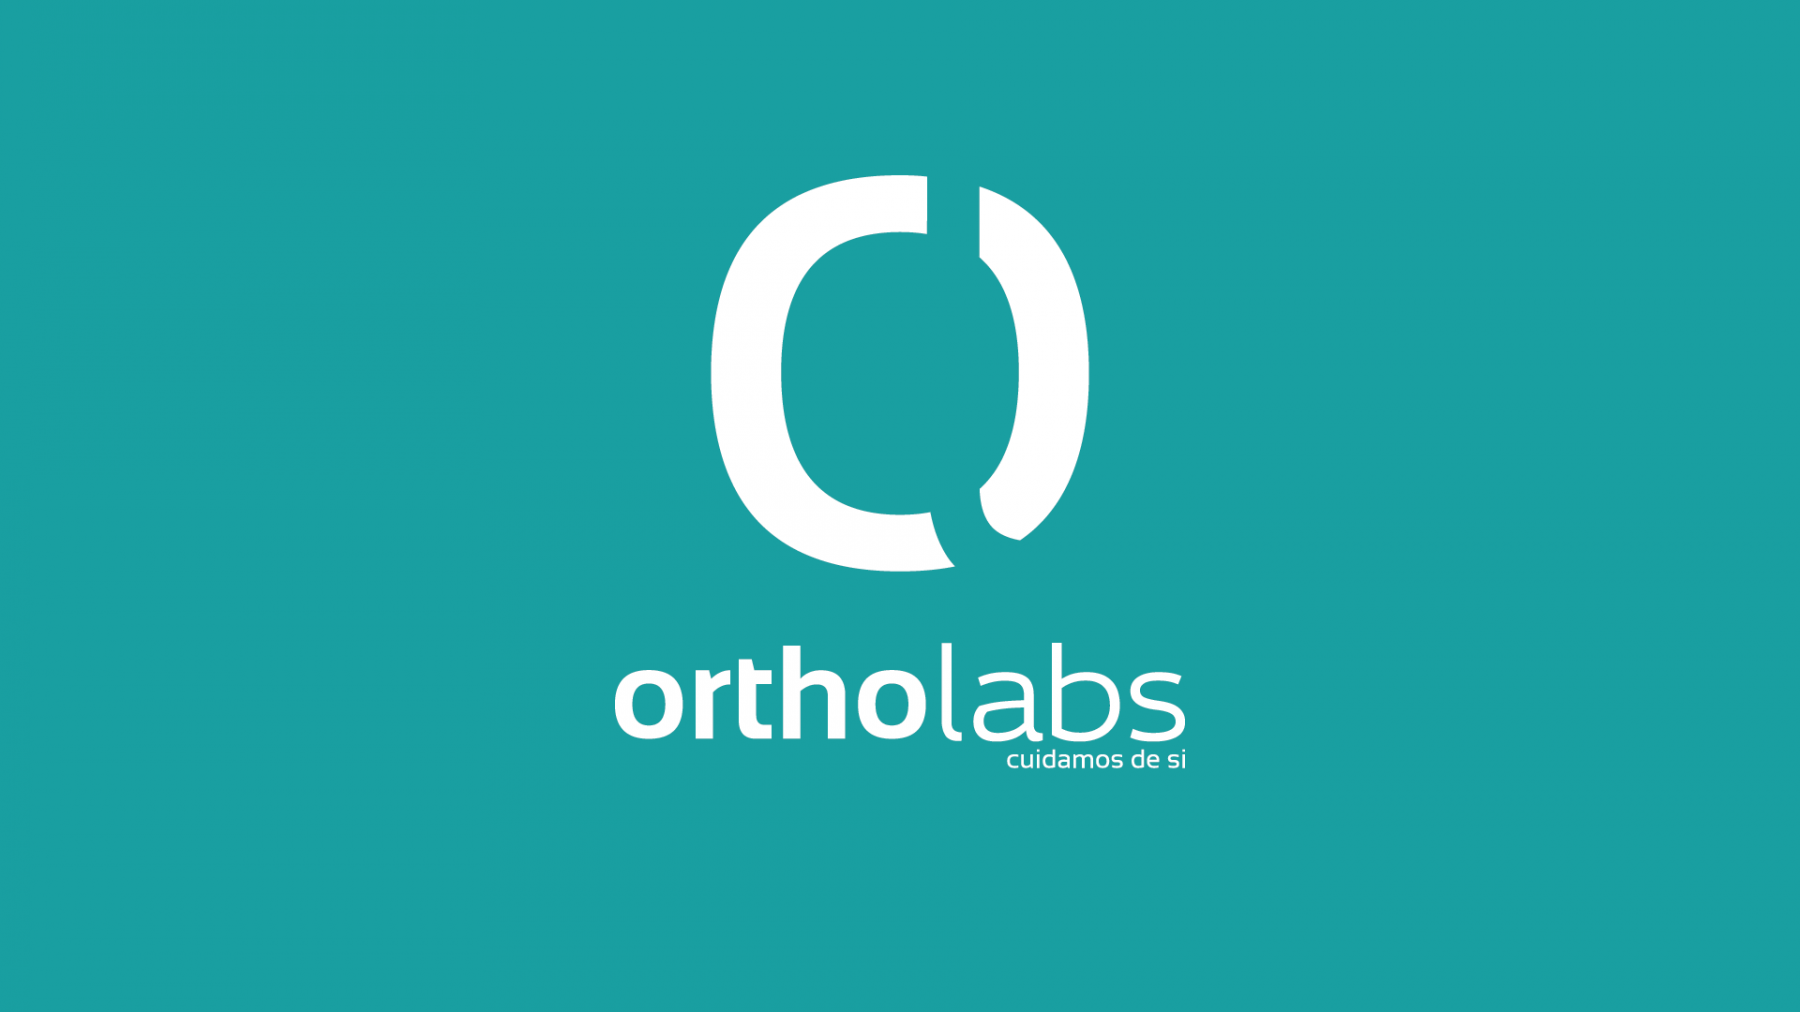 Ortholabs | Identidade